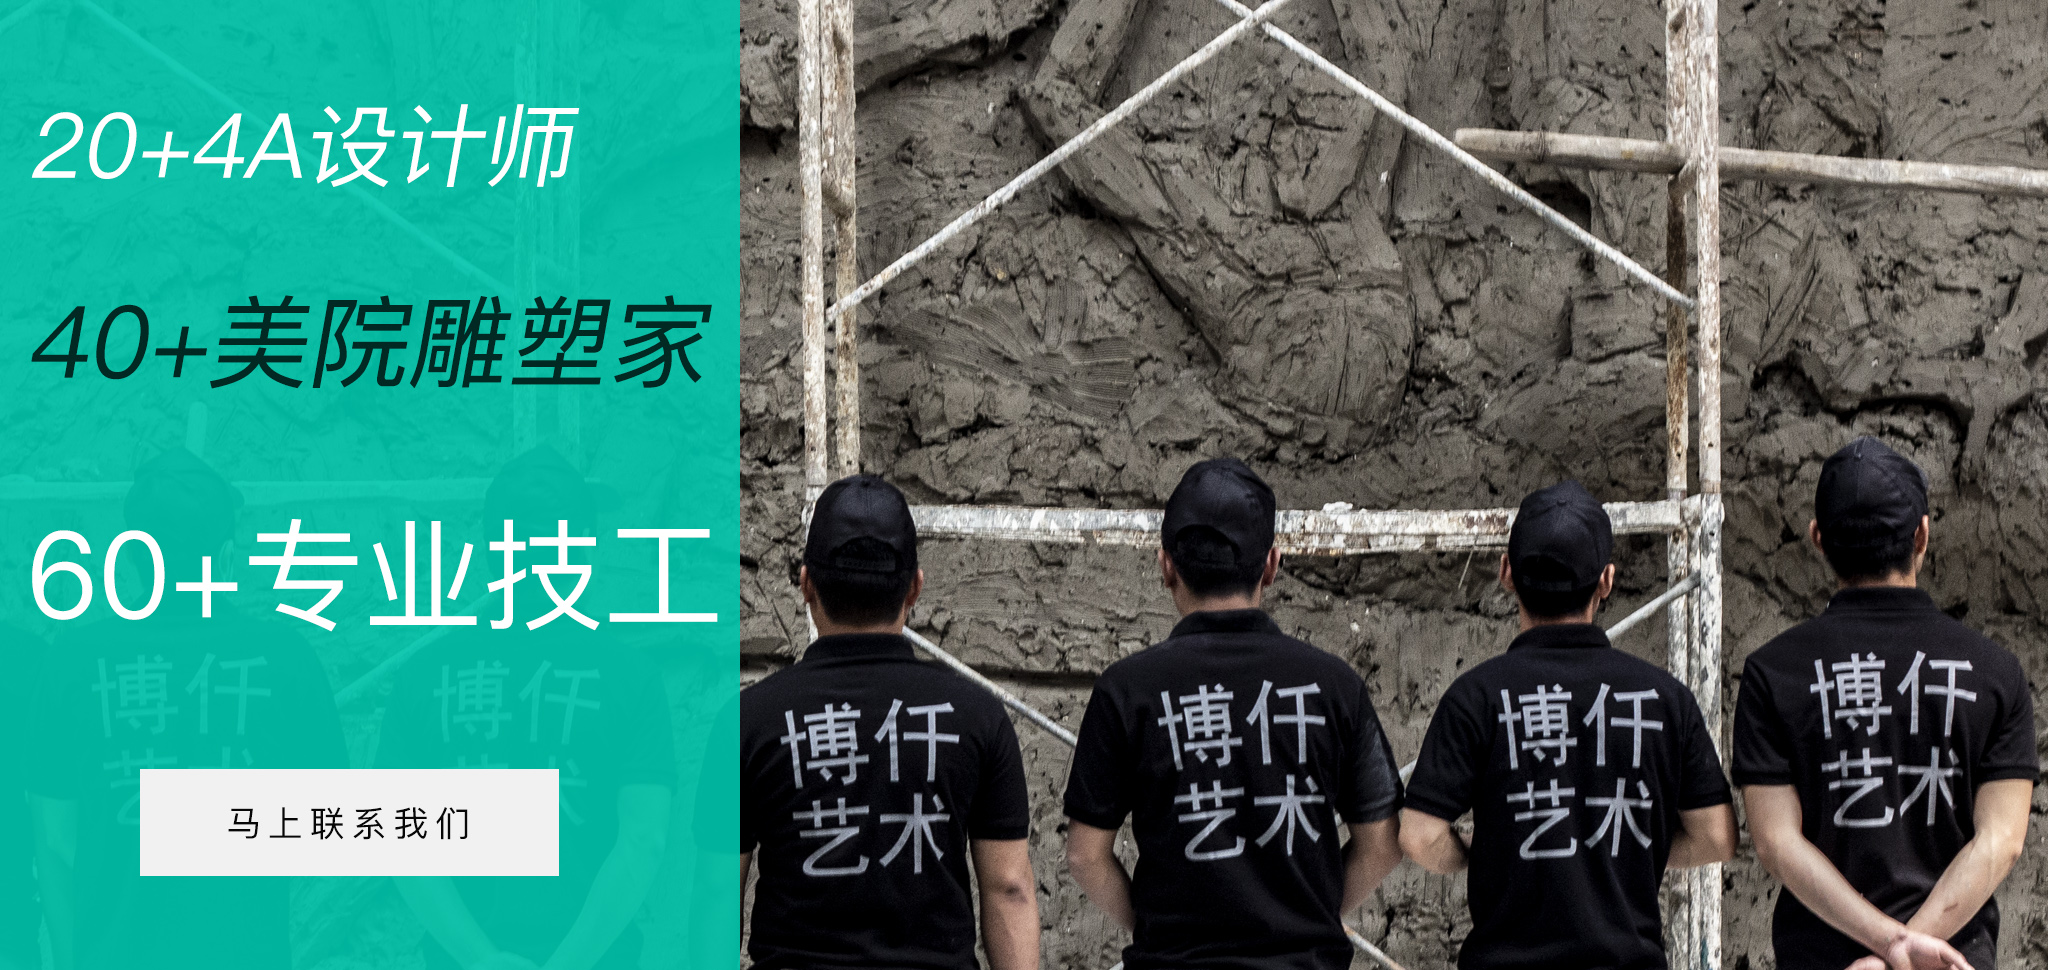 博仟北京雕塑公司拥有专业的雕塑设计团队